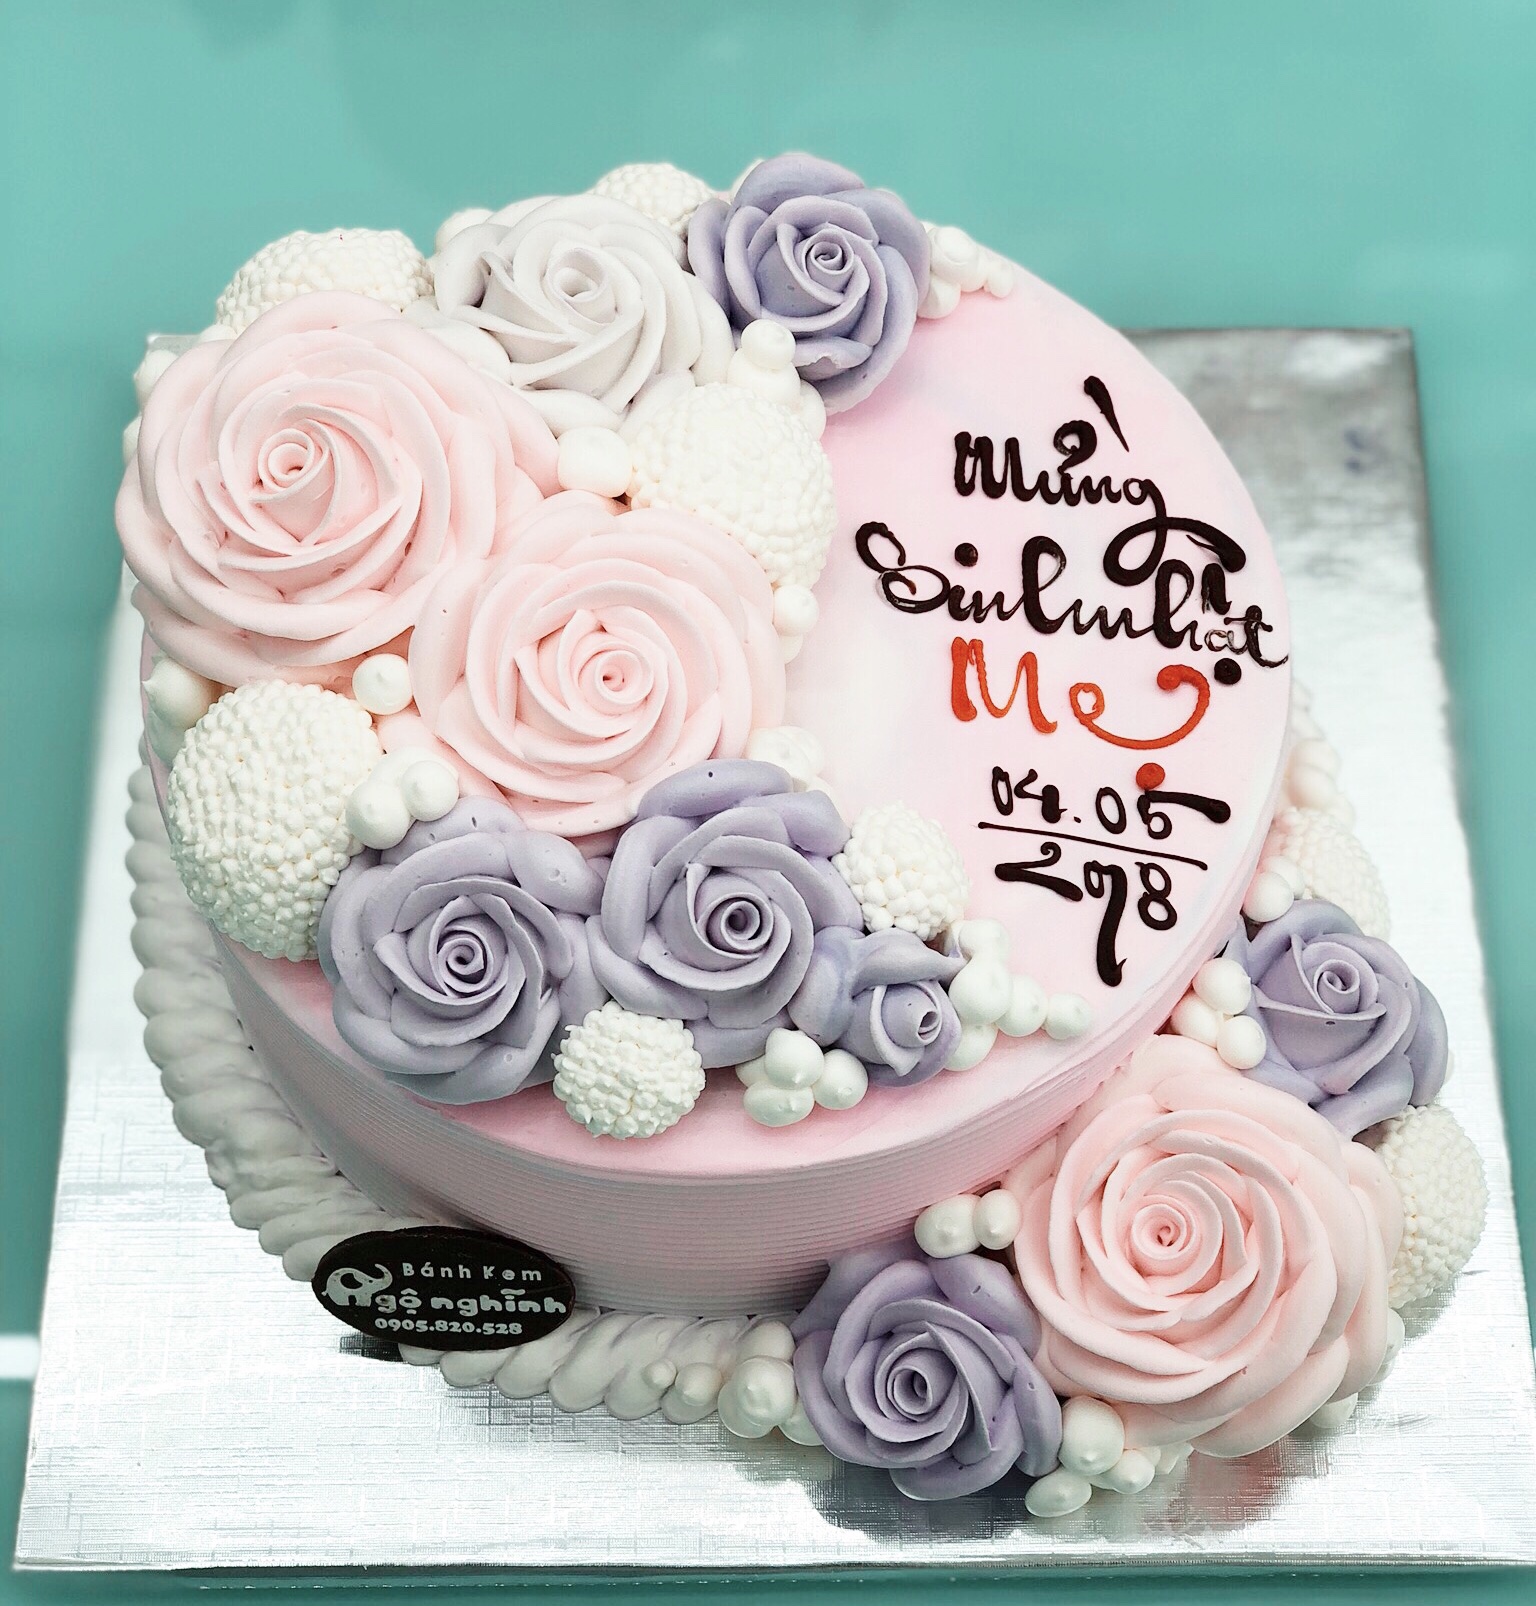 Bạn mong muốn một chiếc bánh sinh nhật tạo hình hoa hồng 3D để tặng cho người thân hoặc bạn bè của mình? Hãy xem mẫu bánh của chúng tôi để lựa chọn những kiểu hoa hồng đẹp nhất và sống động nhất nhé!